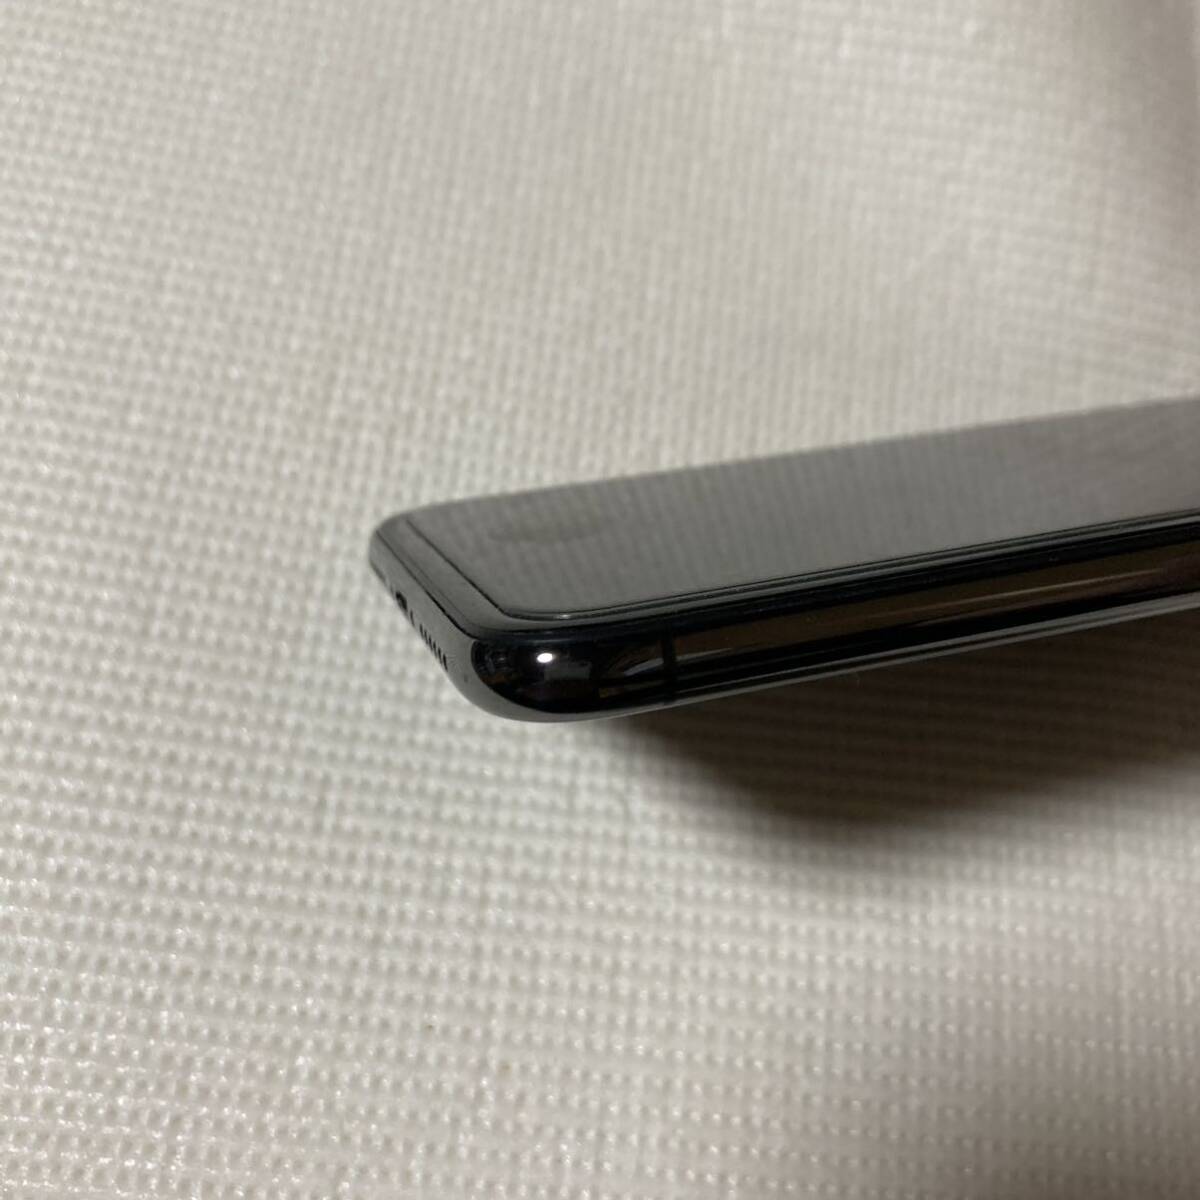 送料無料 美品 SIMフリー iPhoneX 64GB スペースグレー バッテリー最大容量100% SIMロック解除済